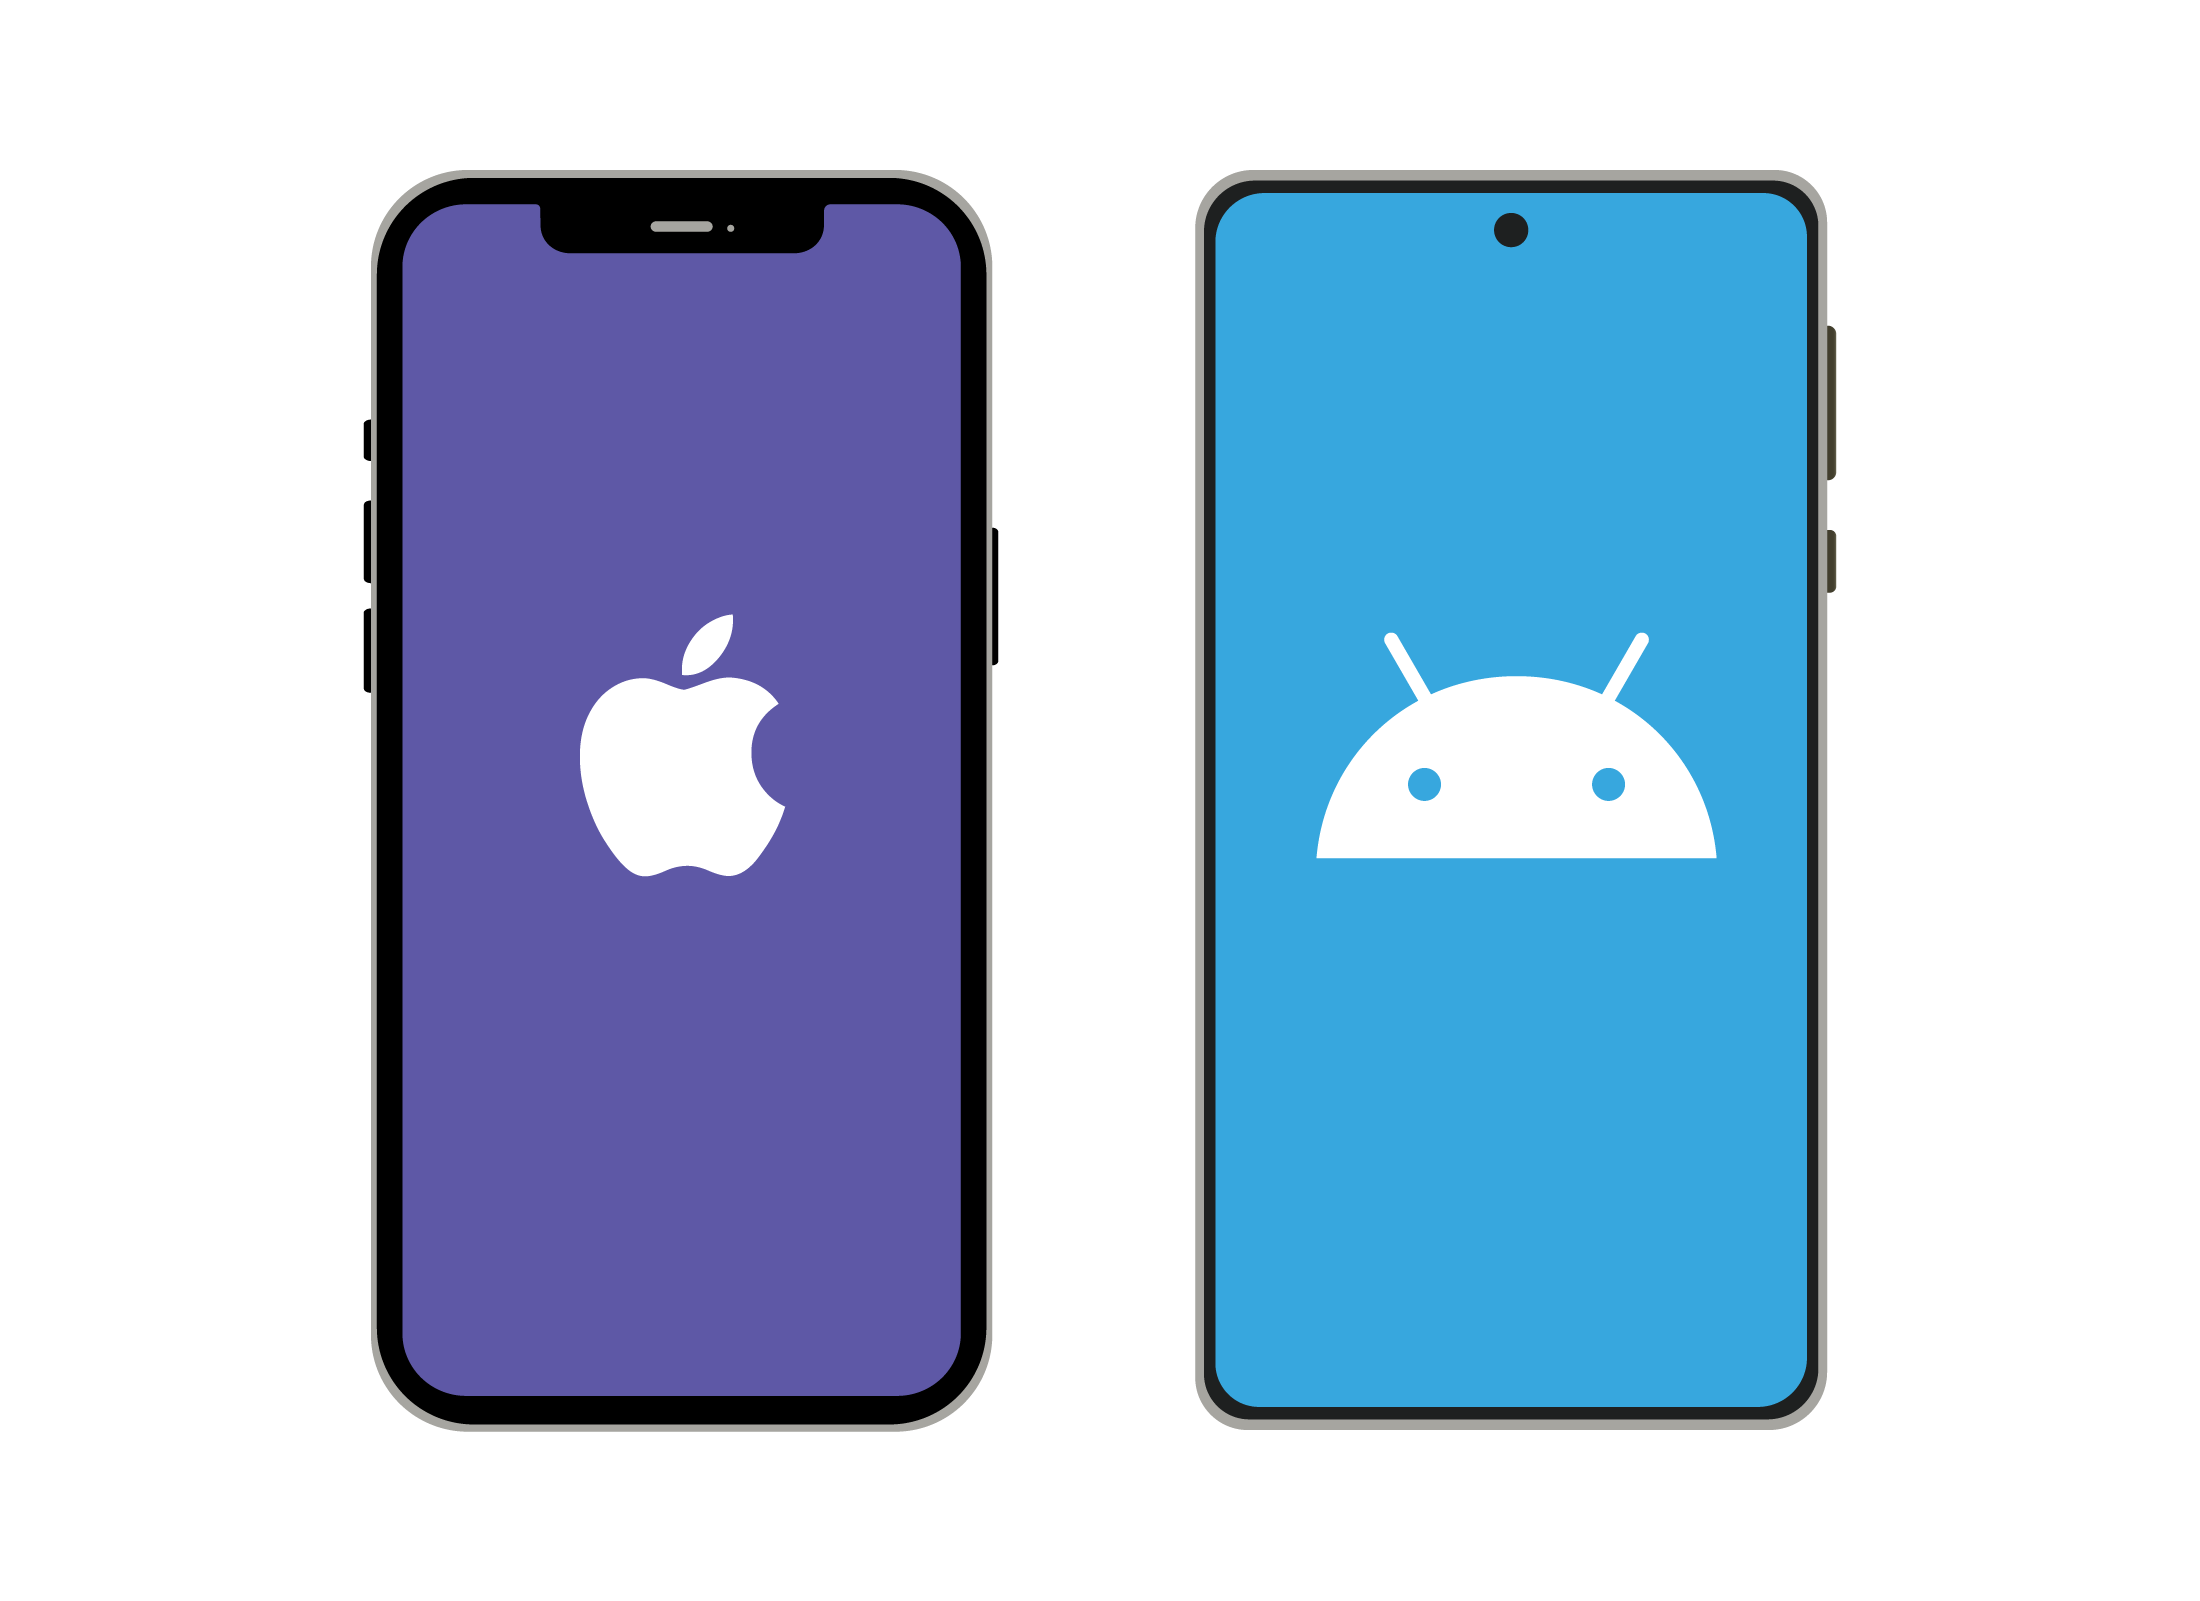 Two smartphones